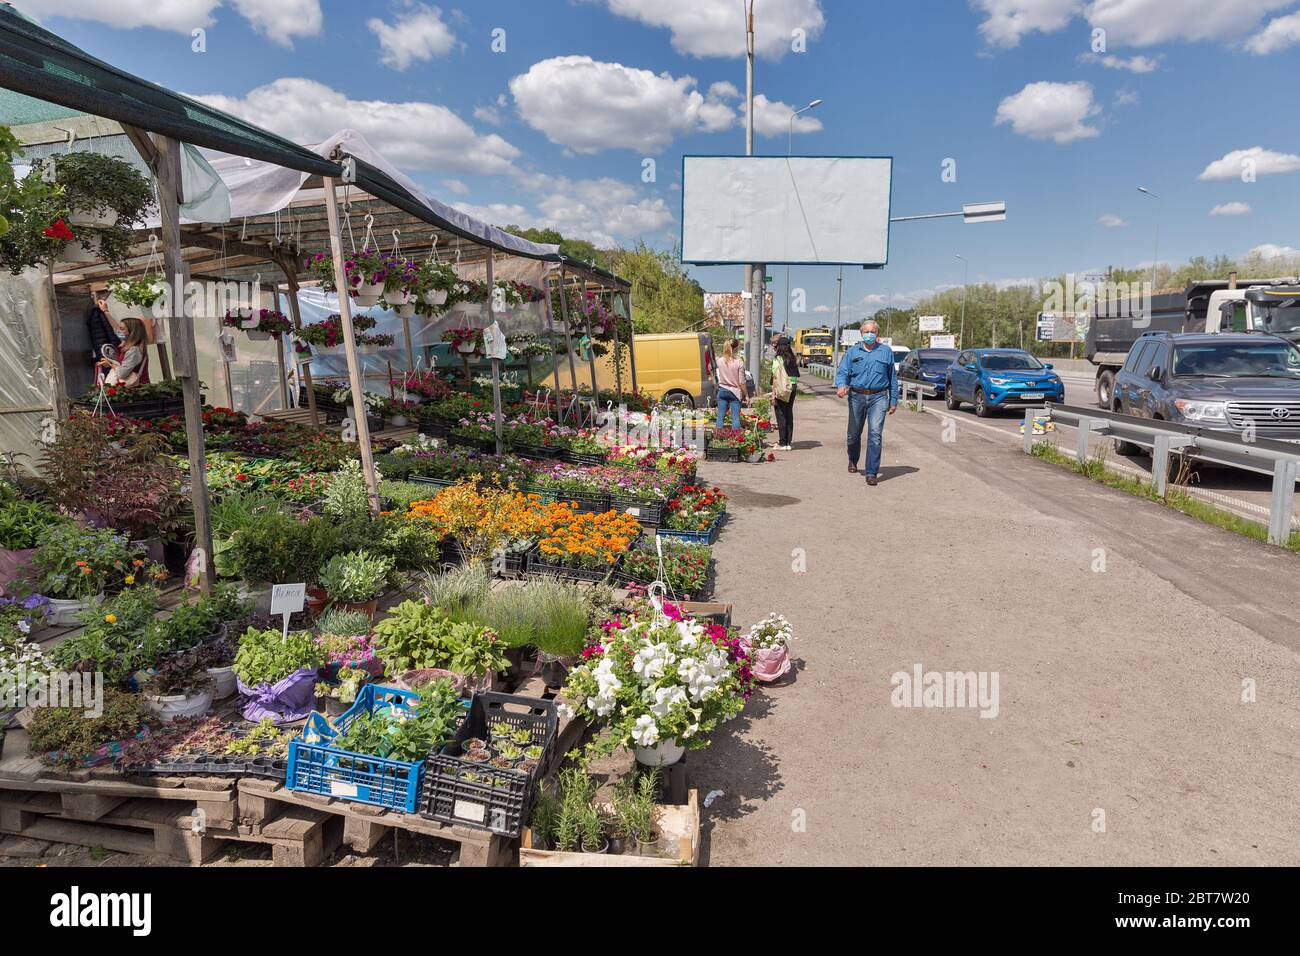 KIEW, UKRAINE - 09. MAI 2020: Menschen in medizinischen Masken besuchen Garten Blumen und Pflanzen Markt im Freien gerade nach COVID-19 Quarantäne Schwächung geöffnet. Stockfoto